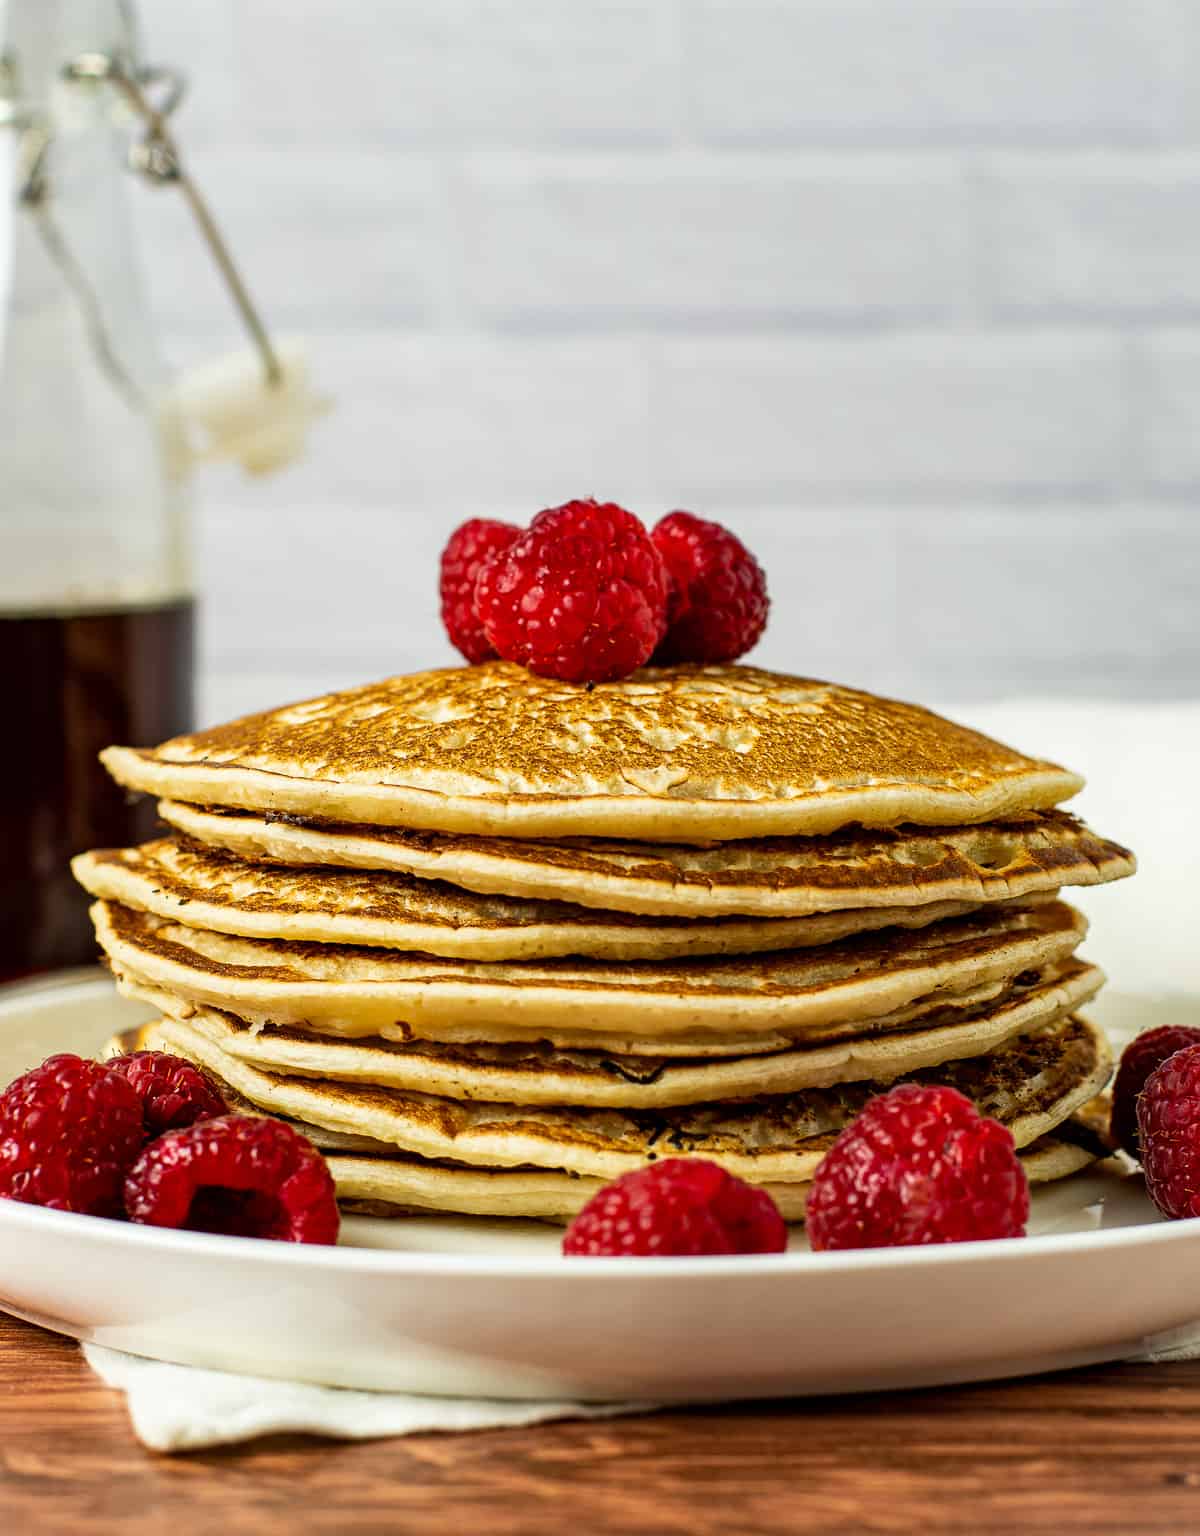 Vegan pancakes with raspberries on top